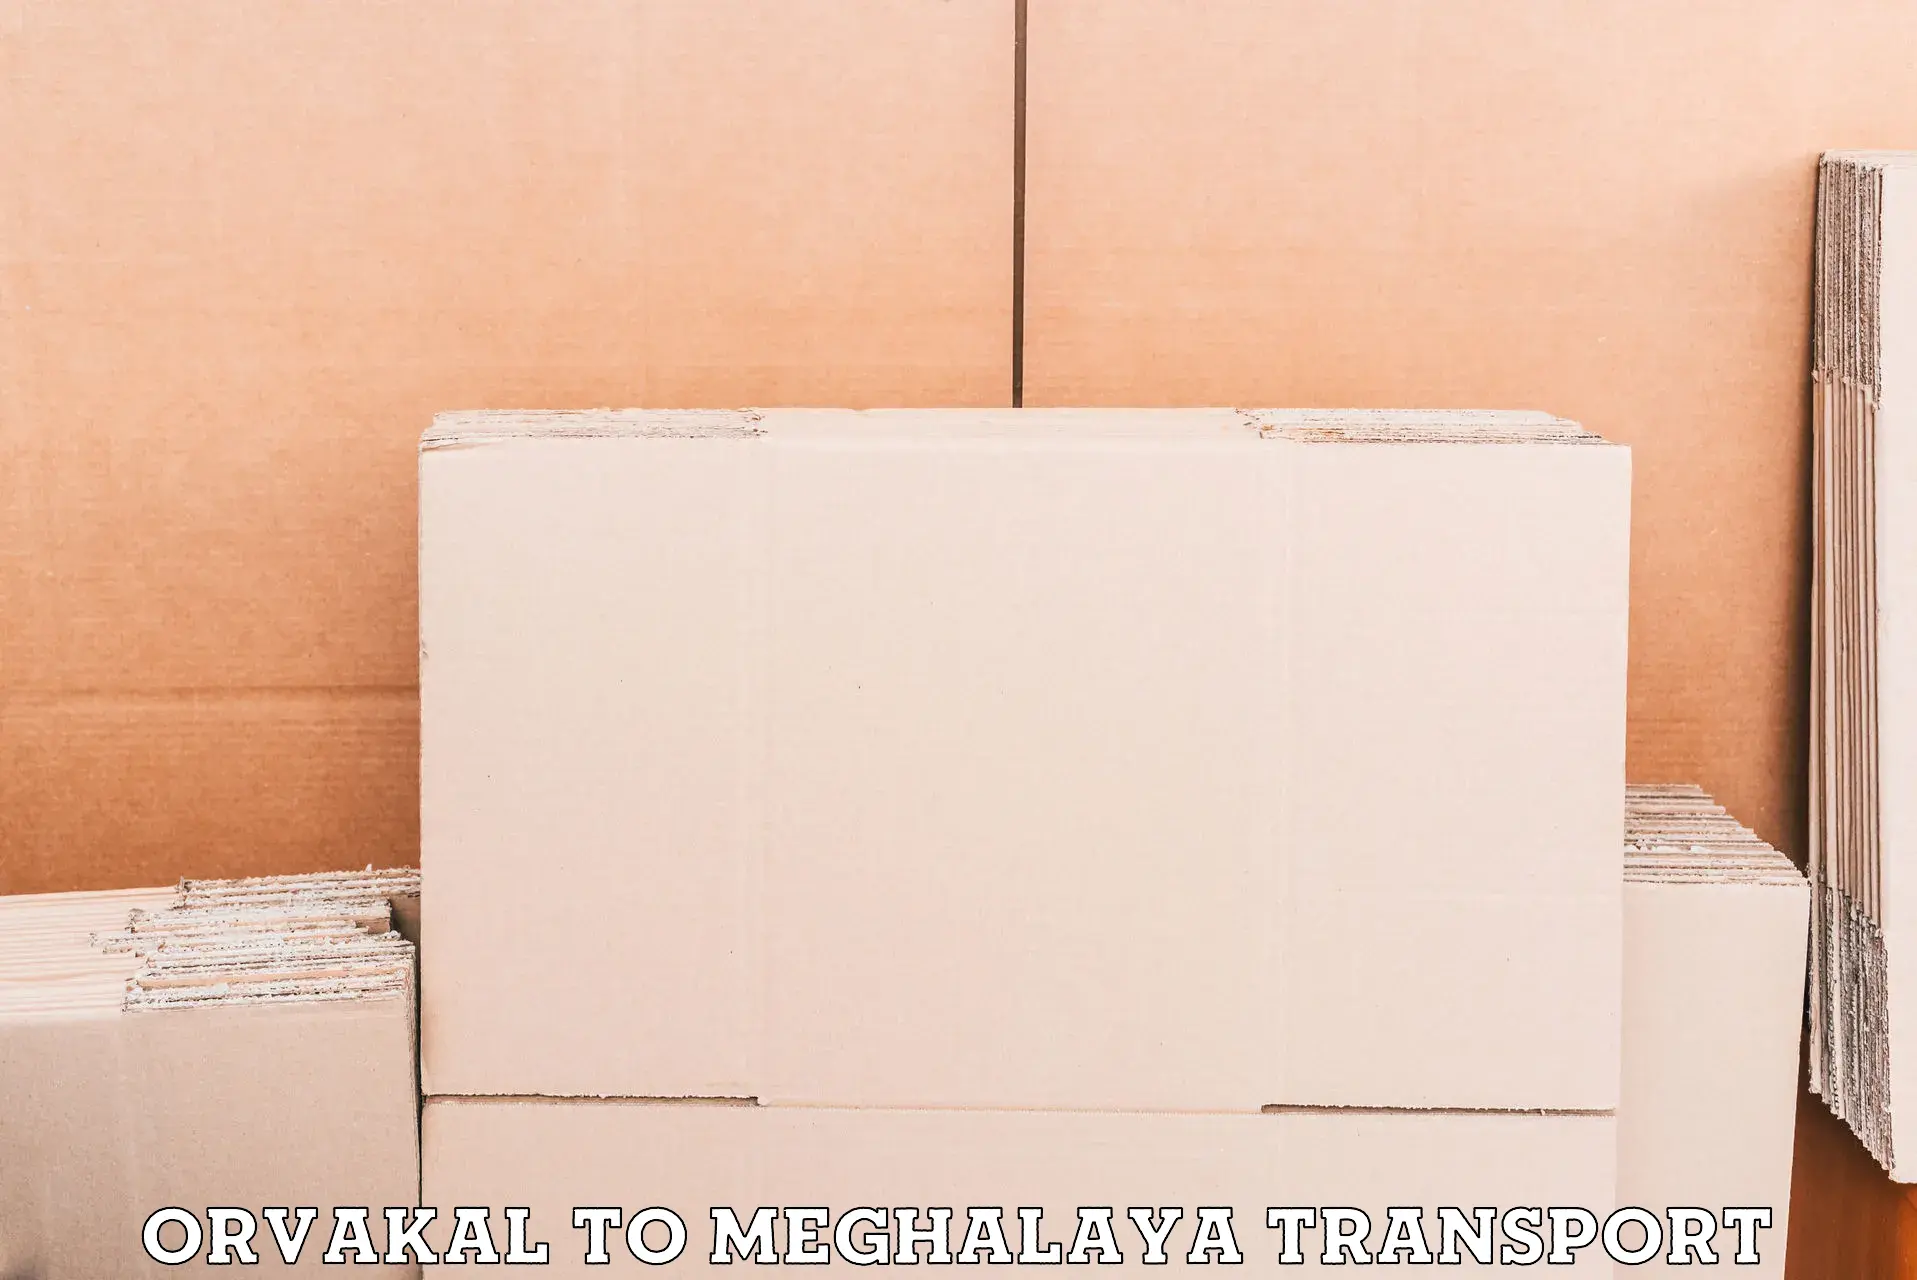 Furniture transport service Orvakal to Meghalaya